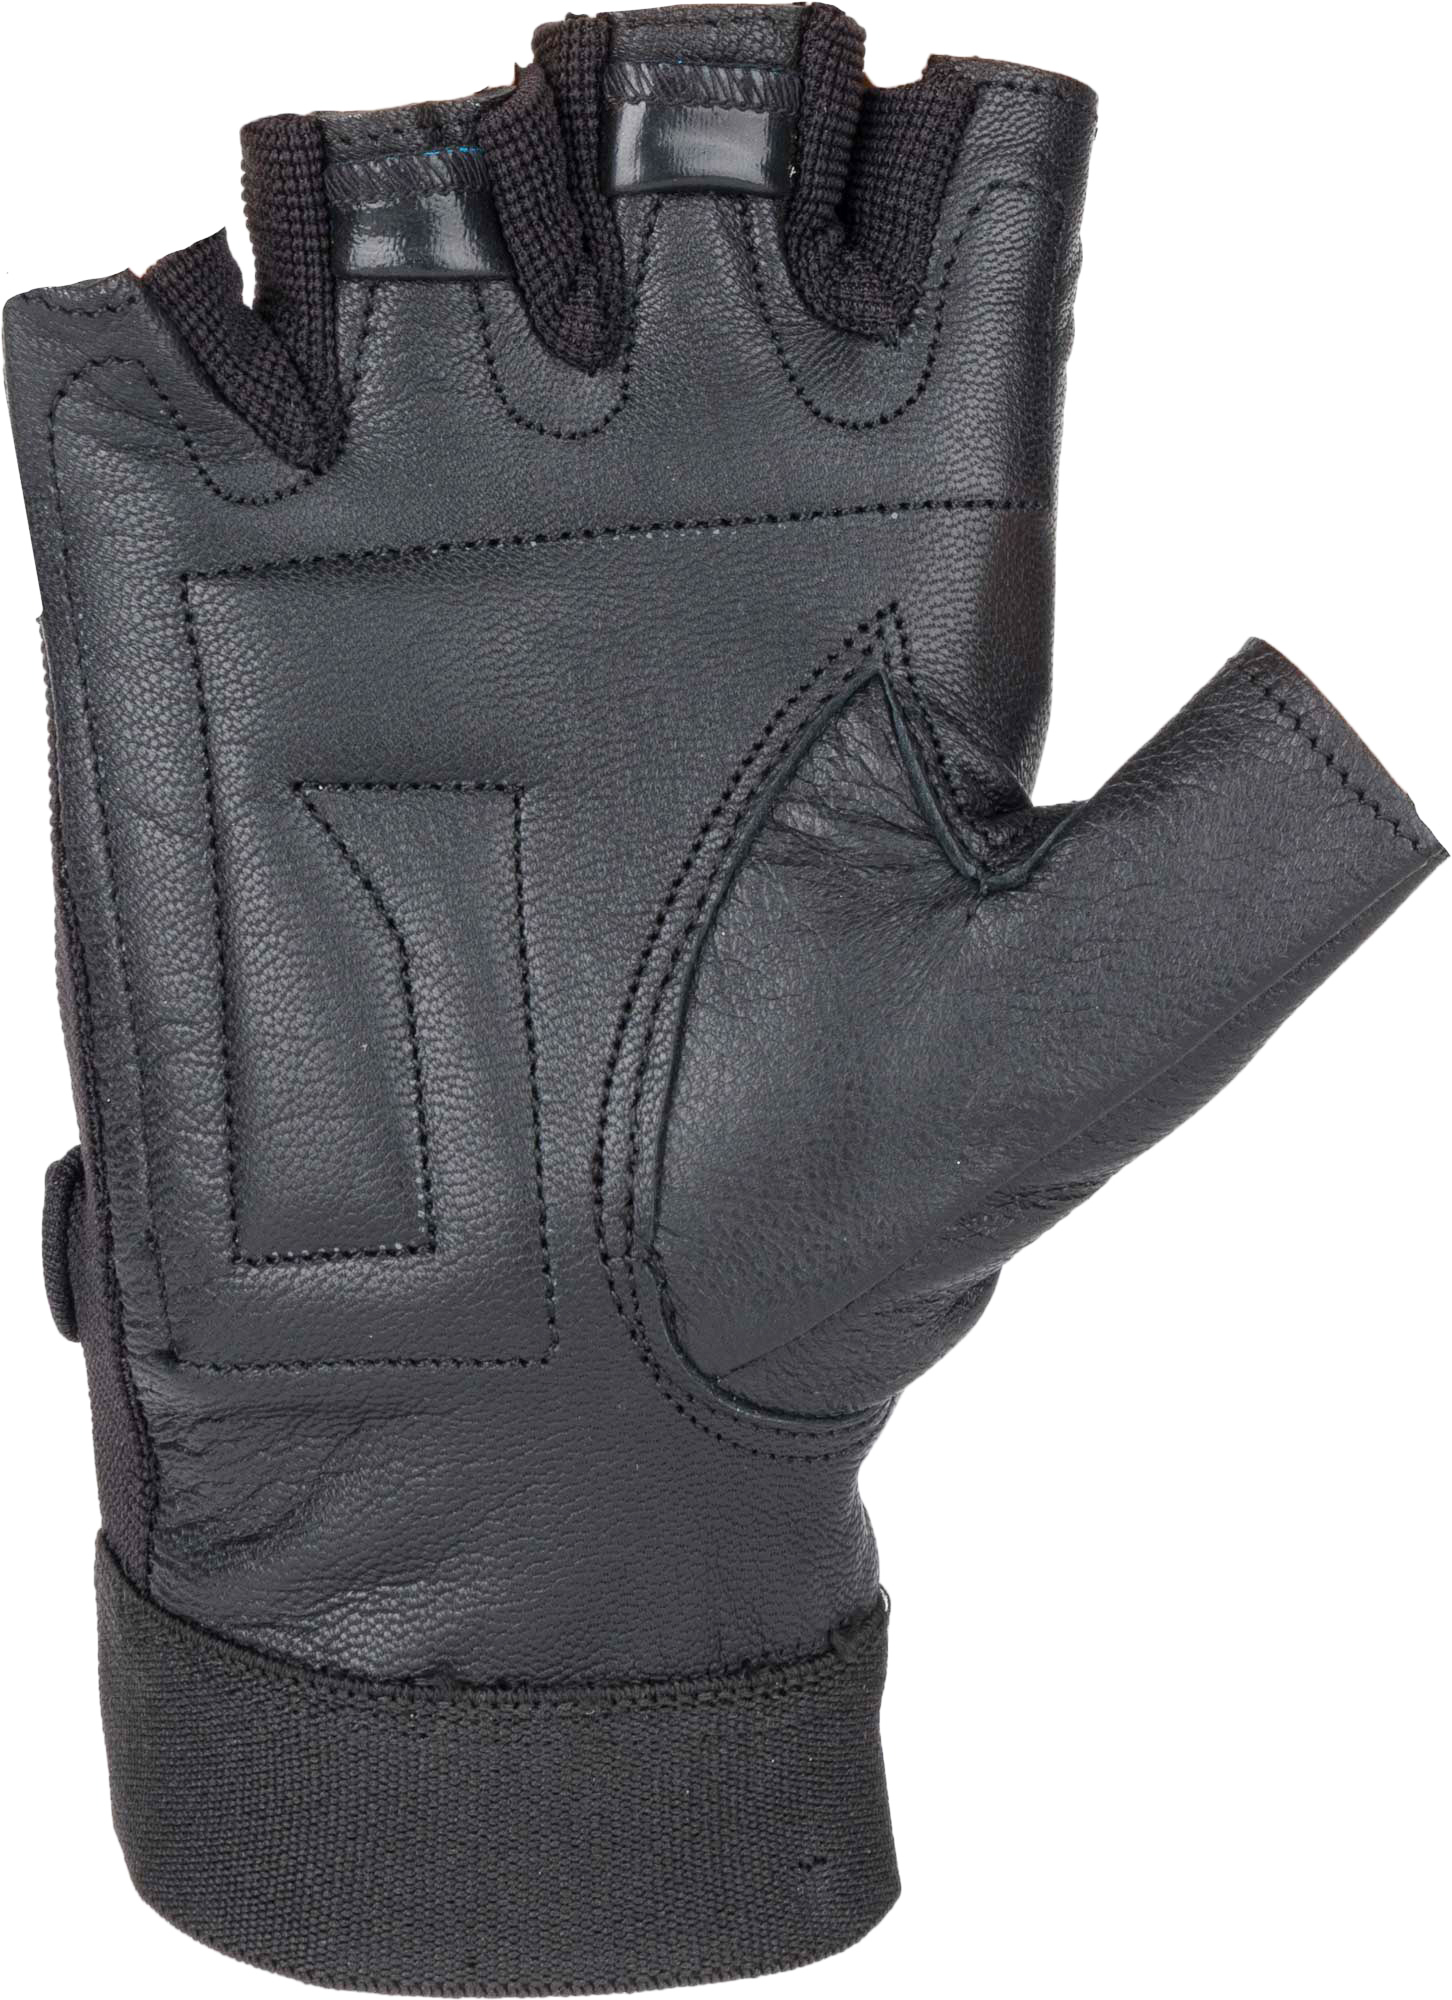 PFR01 - Fitness Gloves